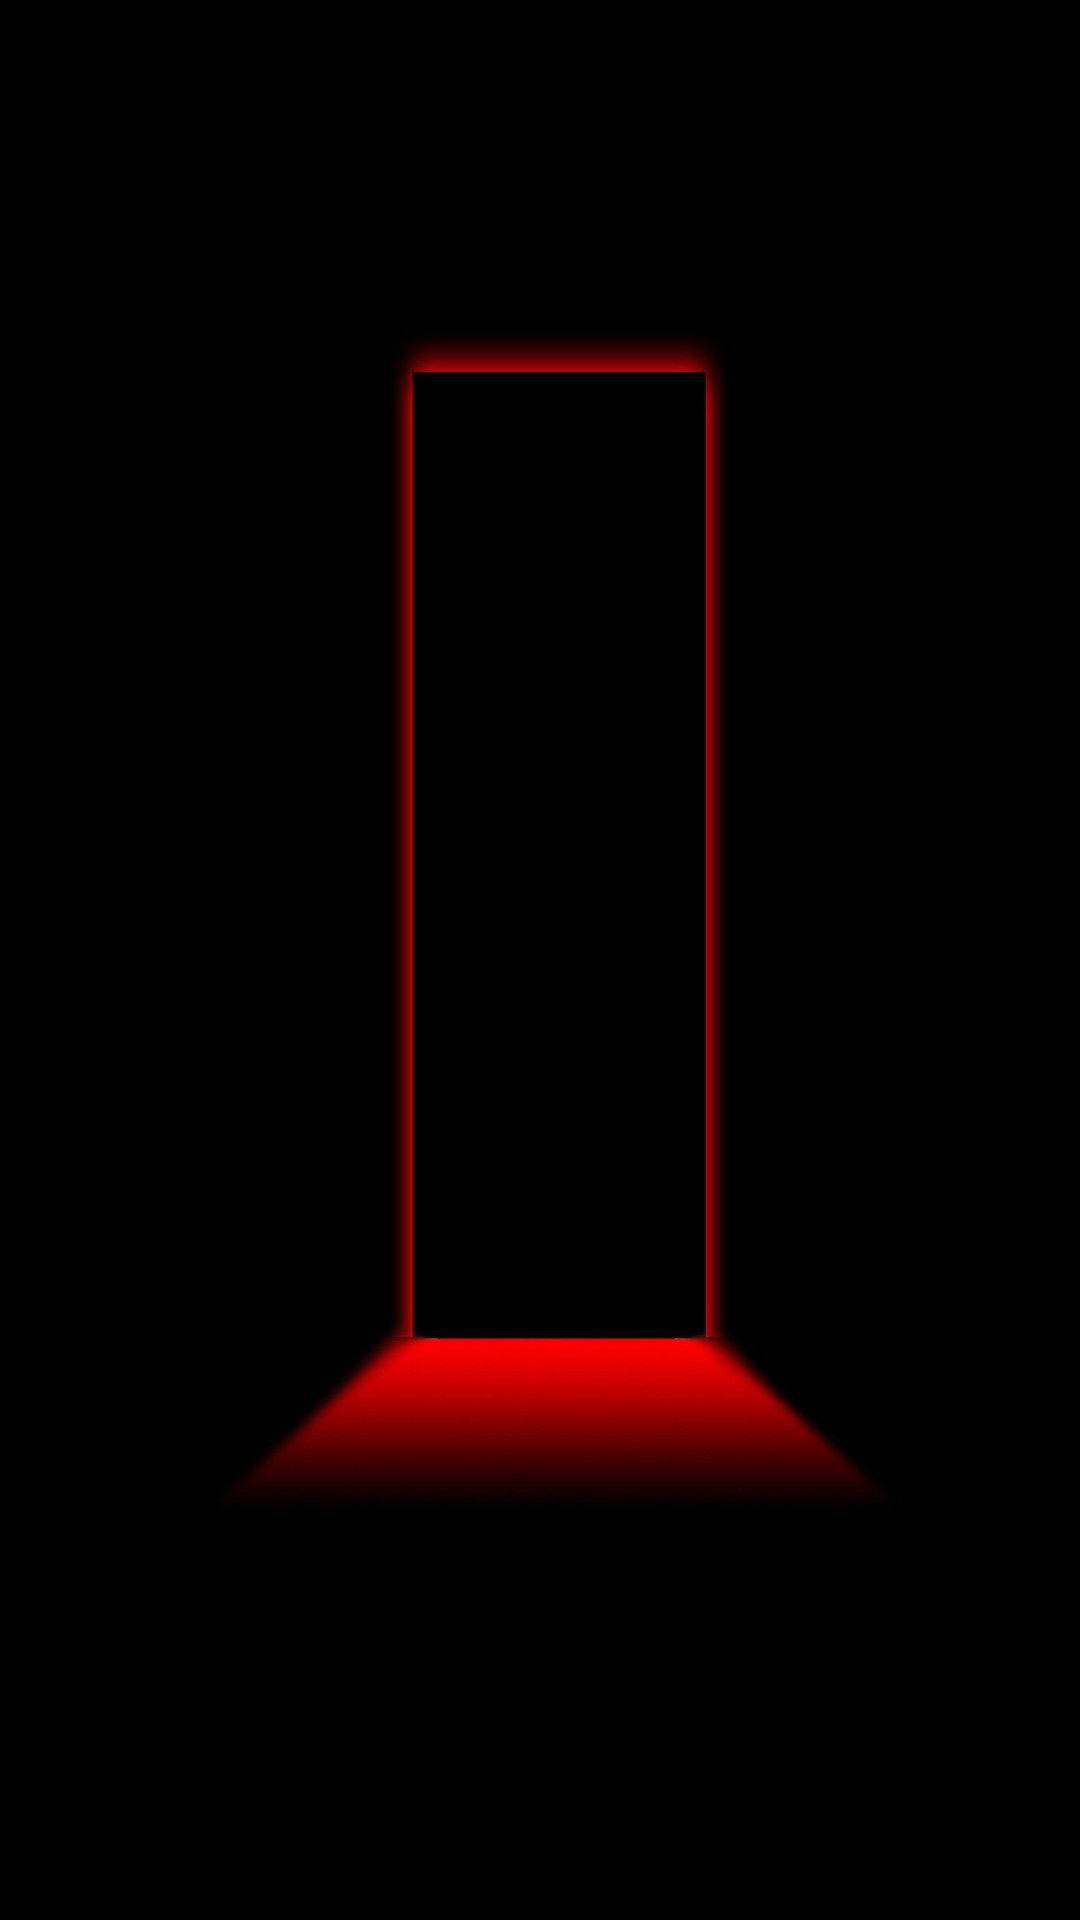 Door-shaped Light Neon Red Iphone Background